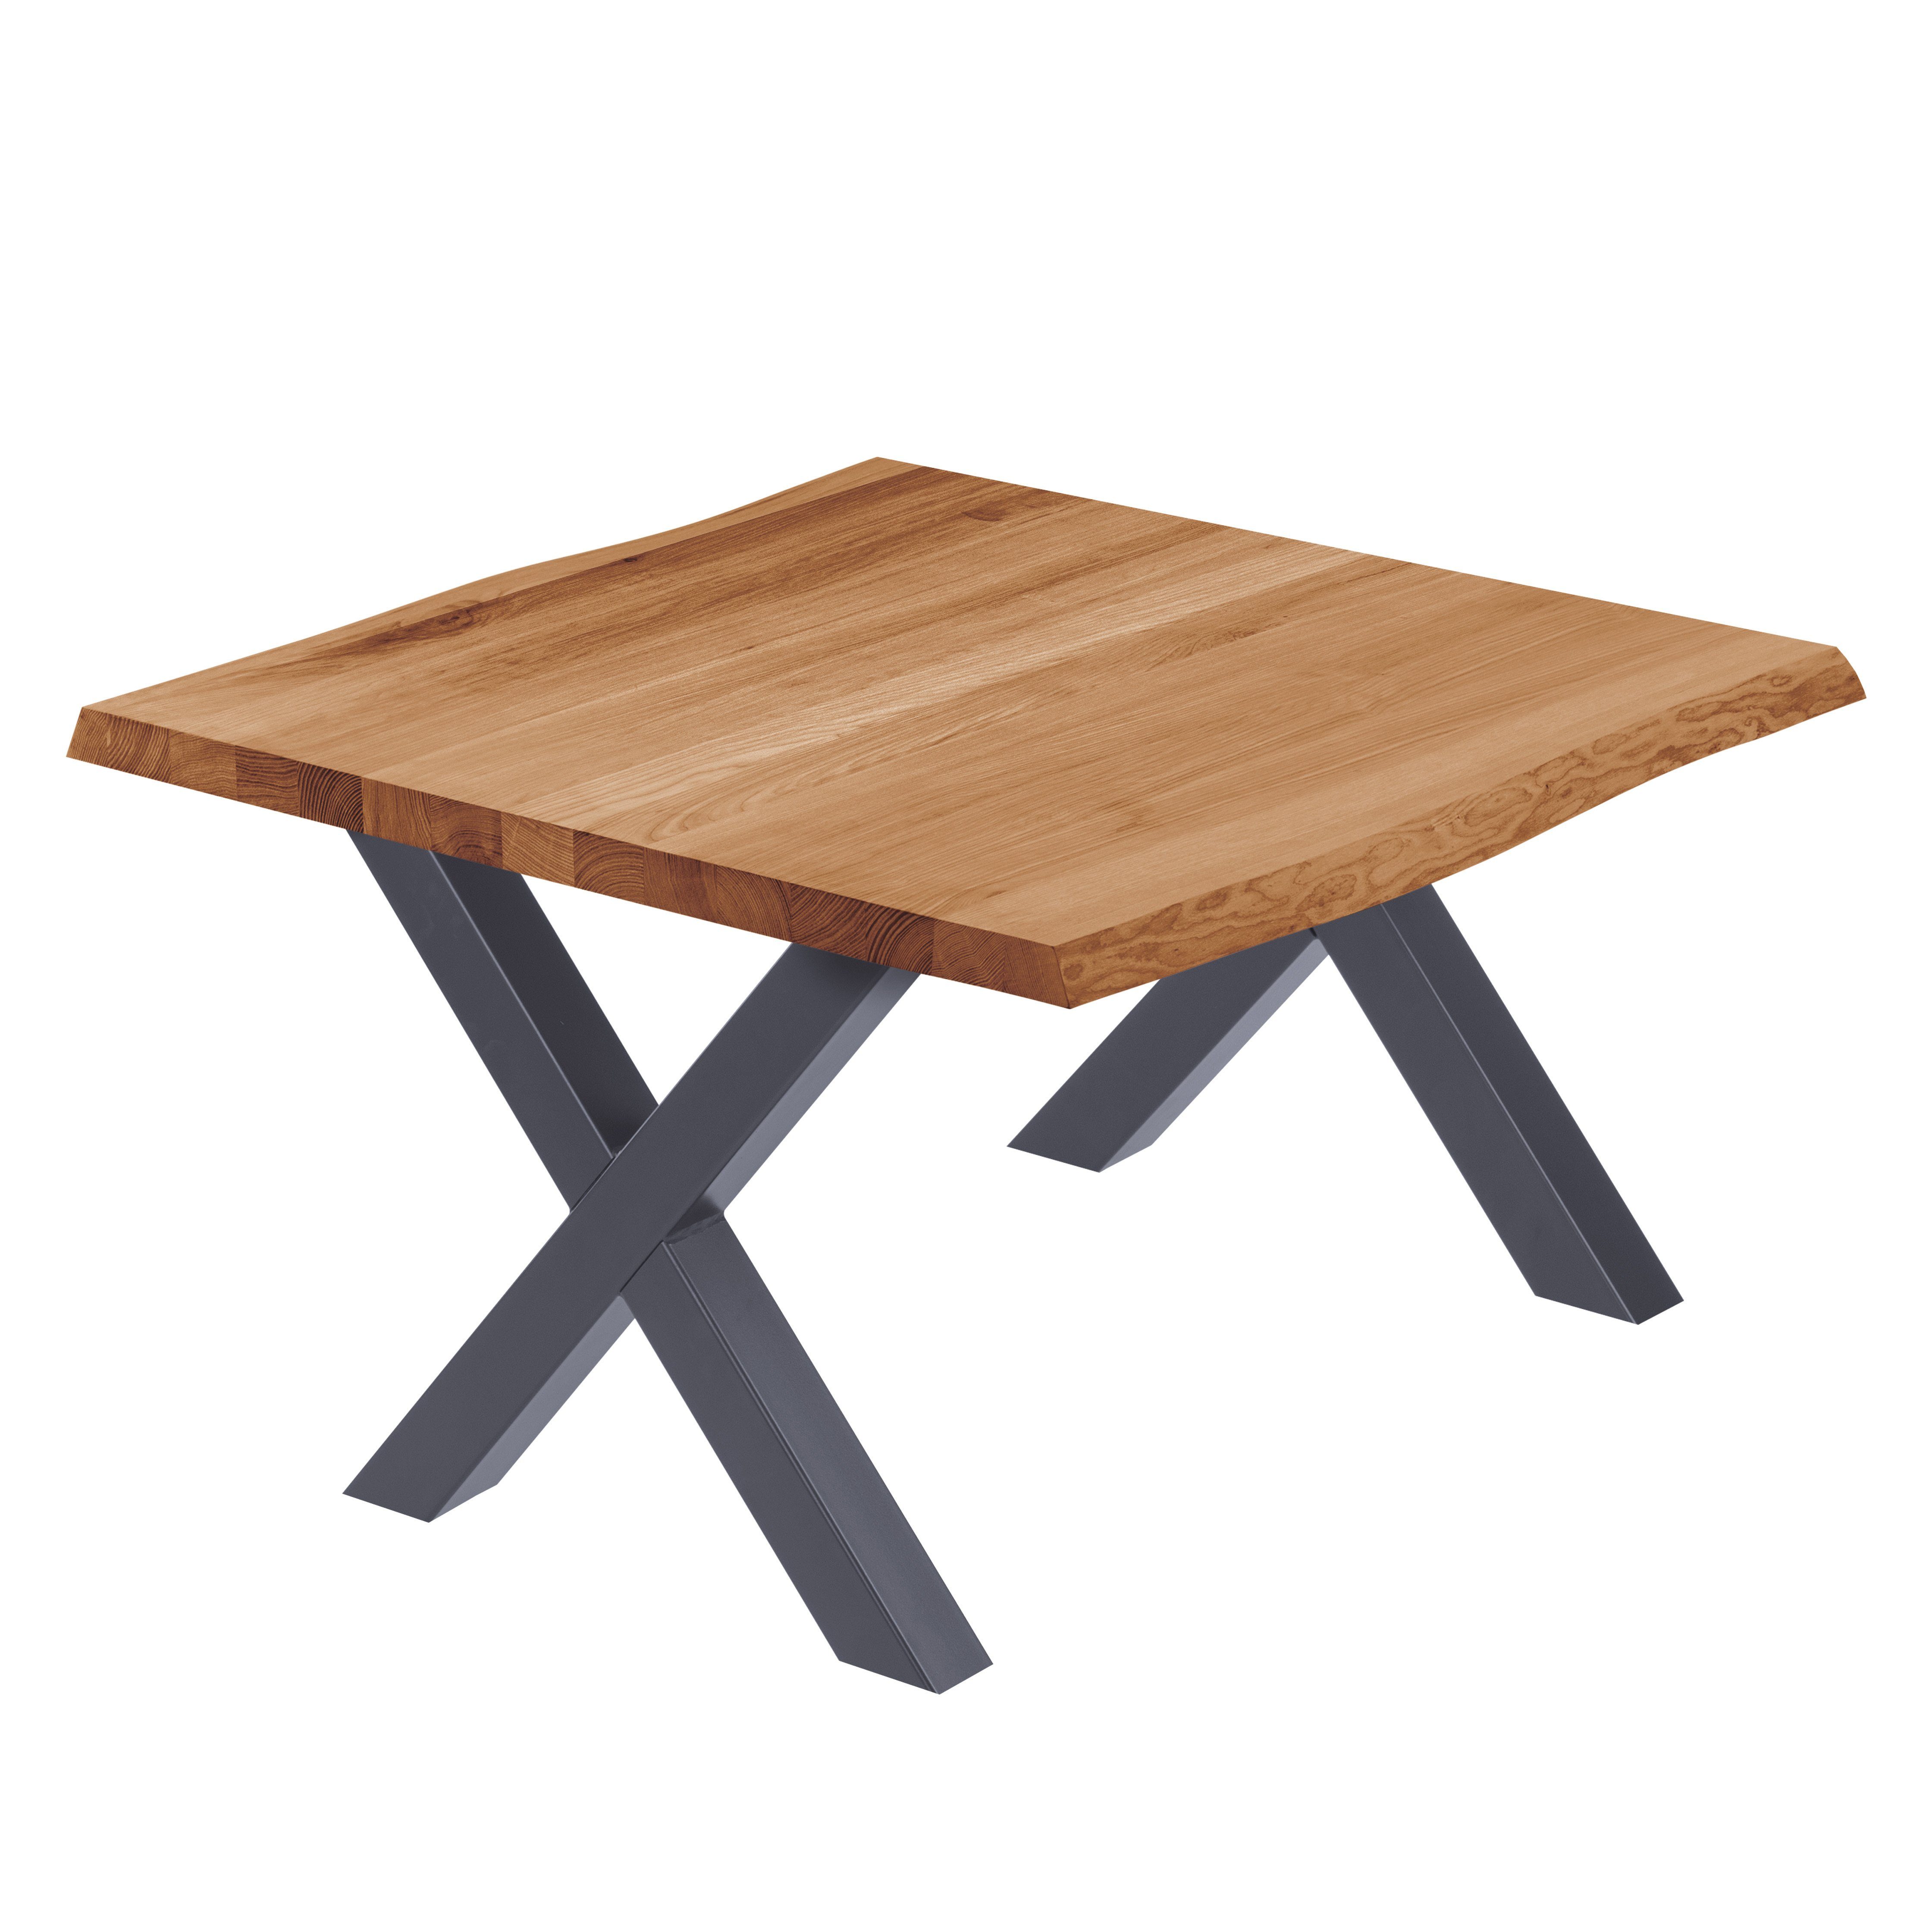 LAMO Manufaktur Baumkantentisch Design Esstisch Massivholz inkl. Metallgestell (1 Tisch), Baumkante massiv Anthrazit | Dunkel | Baumkantentische